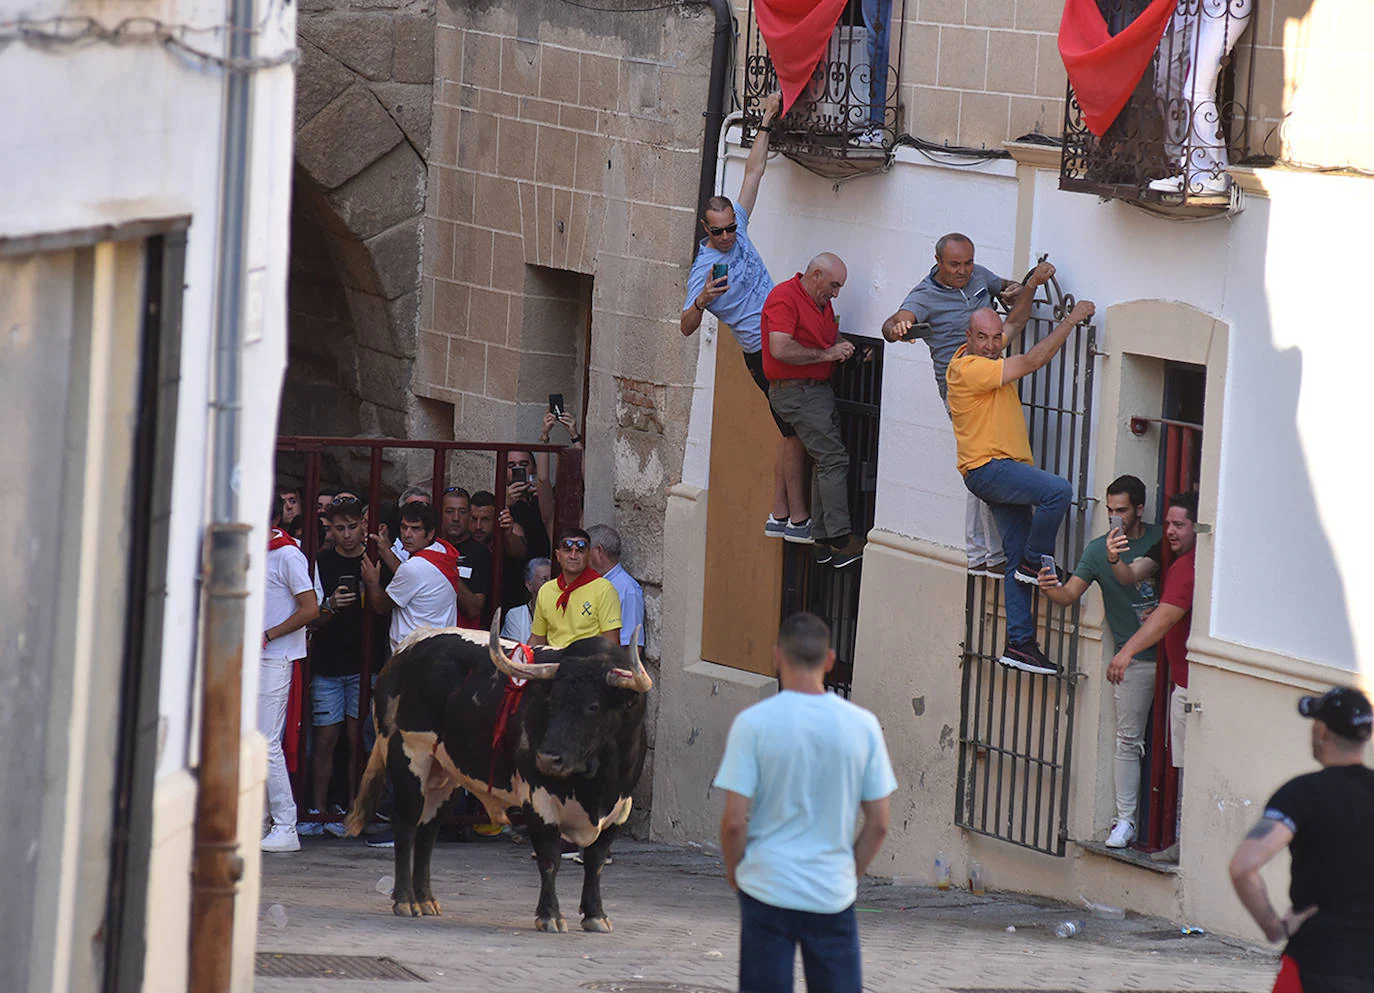 La Junta de Defensa triunfa también con el toro de la tarde del día 25 en Coria, 'Castañero'.